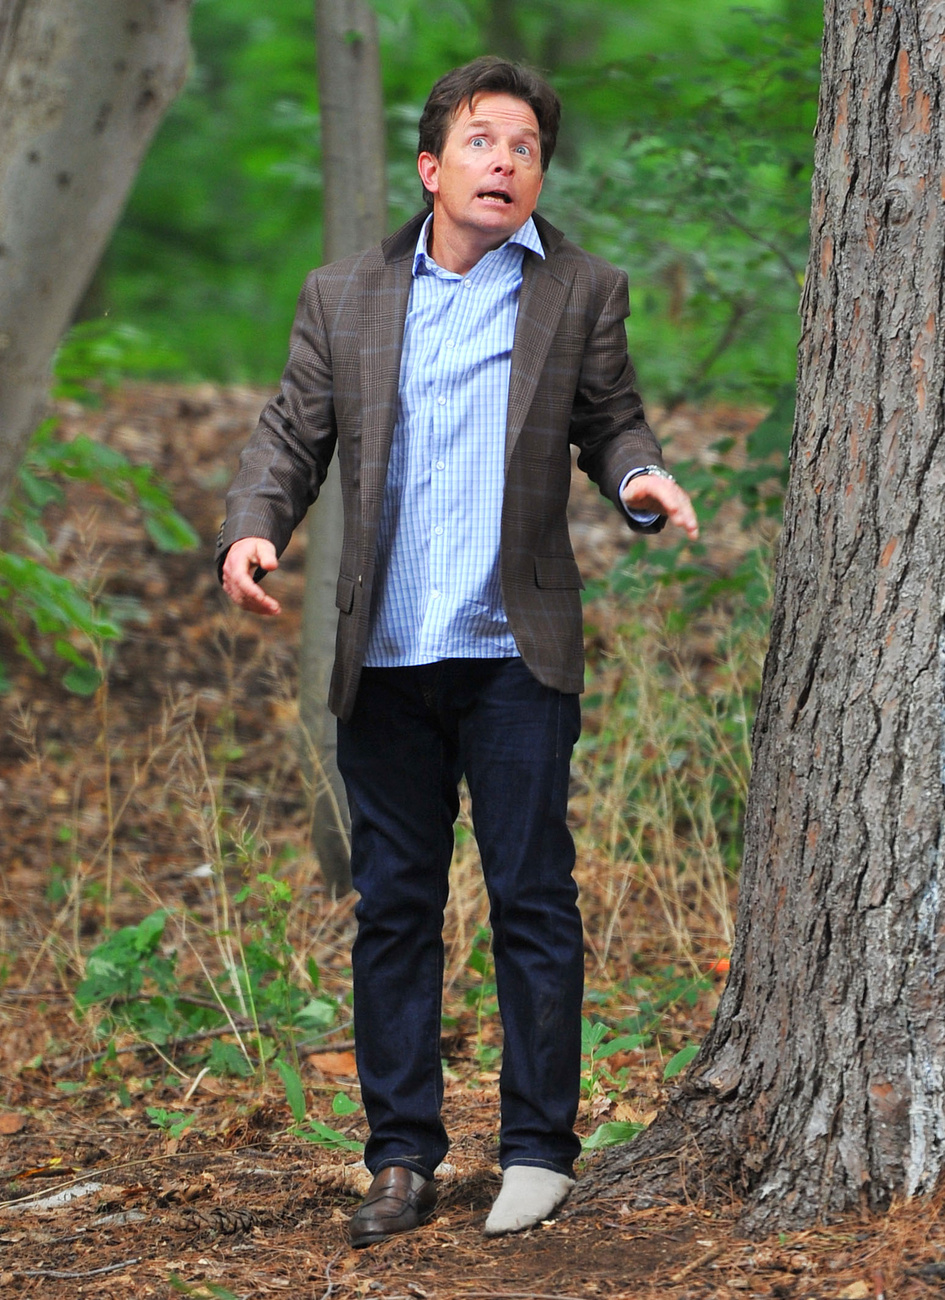 Michael J. Fox fák között forgat New Yorkban